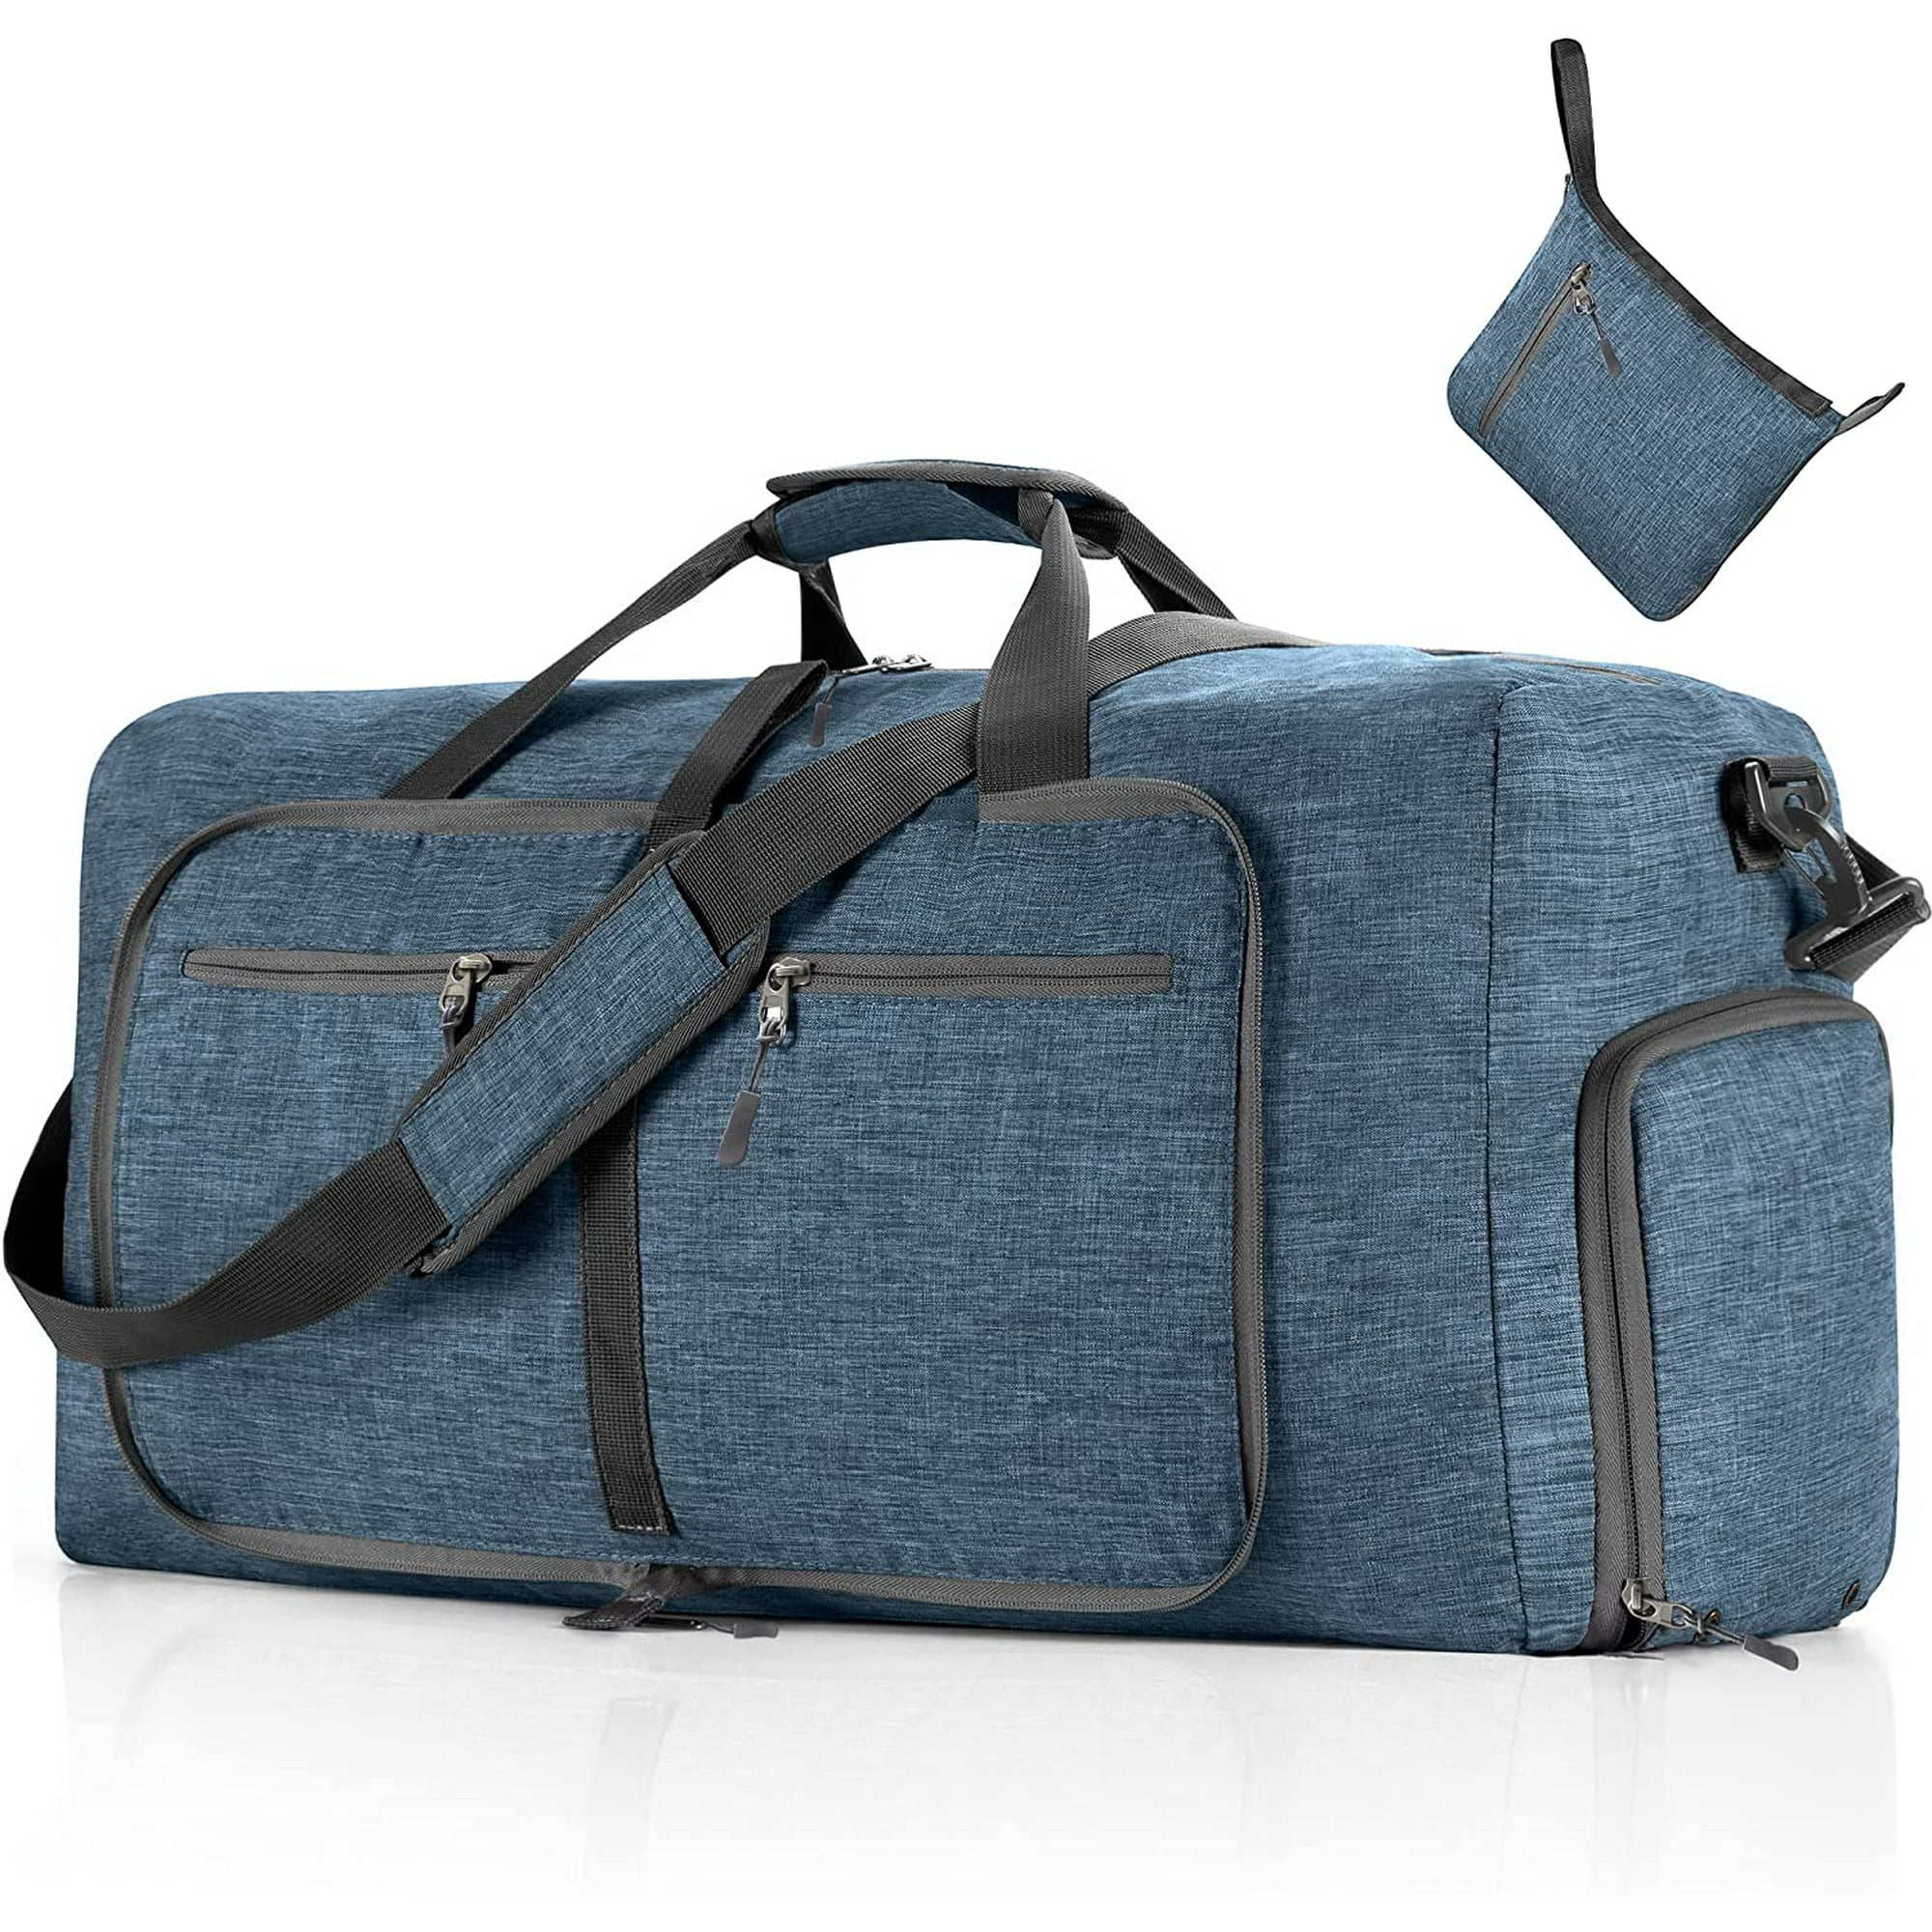 Bolsa de viaje plegable, ligera, plegable, de nailon, resistente al agua,  bolsa de lona para gimnasio, bolsa de fin de semana, bolsa de transporte